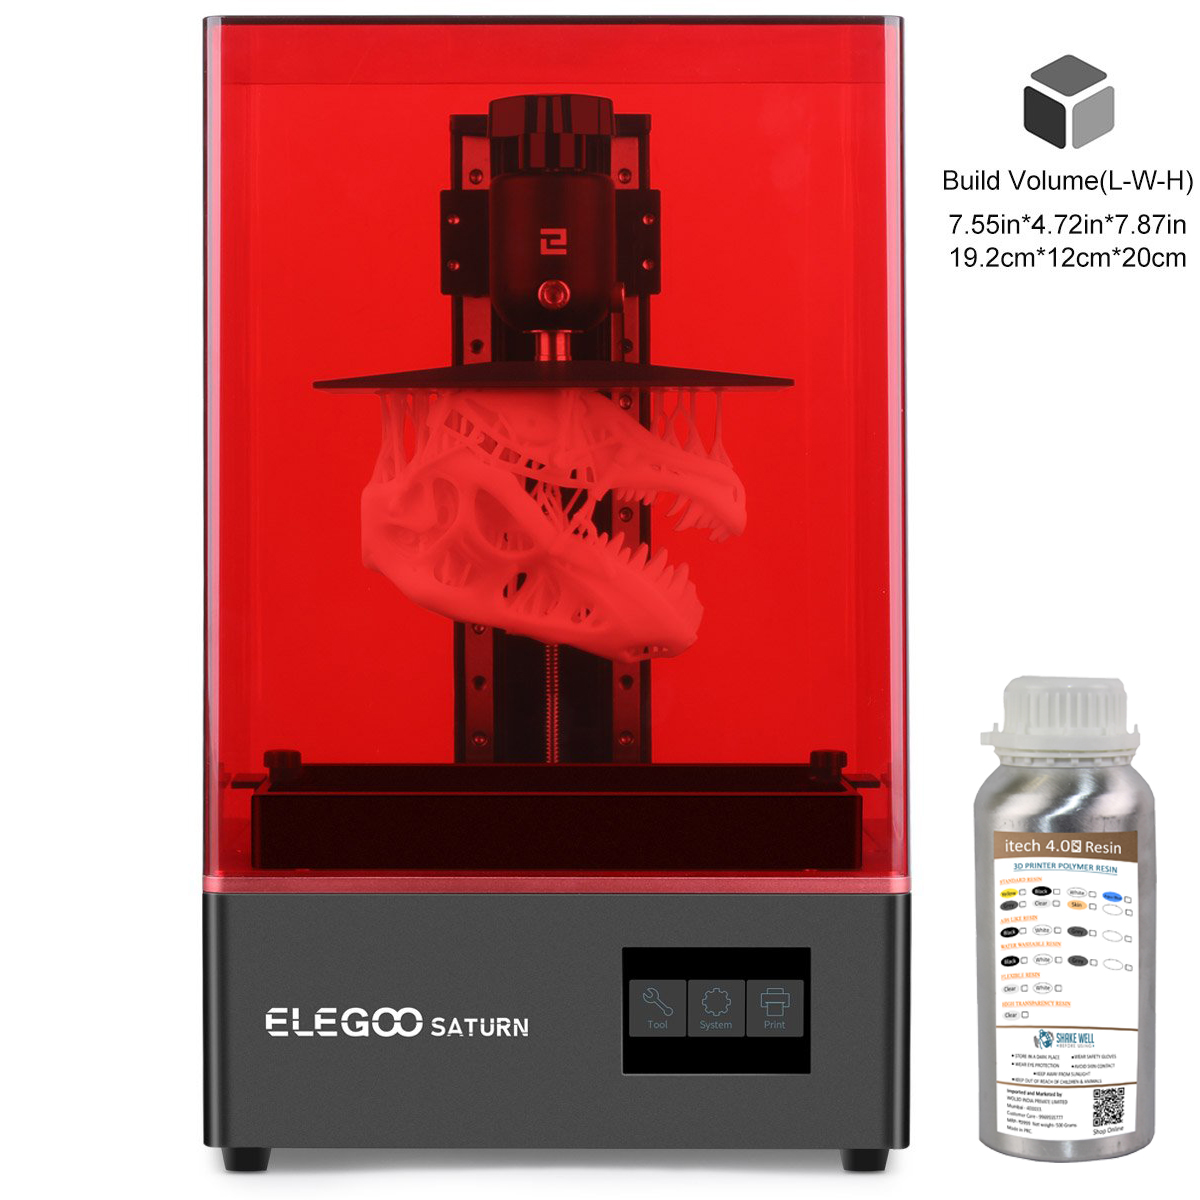  ELEGOO Metal Resin Tank for ELEGOO Saturn 3D Printer, FEP  Pre-Installed, with Lid and 3 Allen Wrench, Resin Vat for ELEGOO Saturn and Saturn  S : Industrial & Scientific